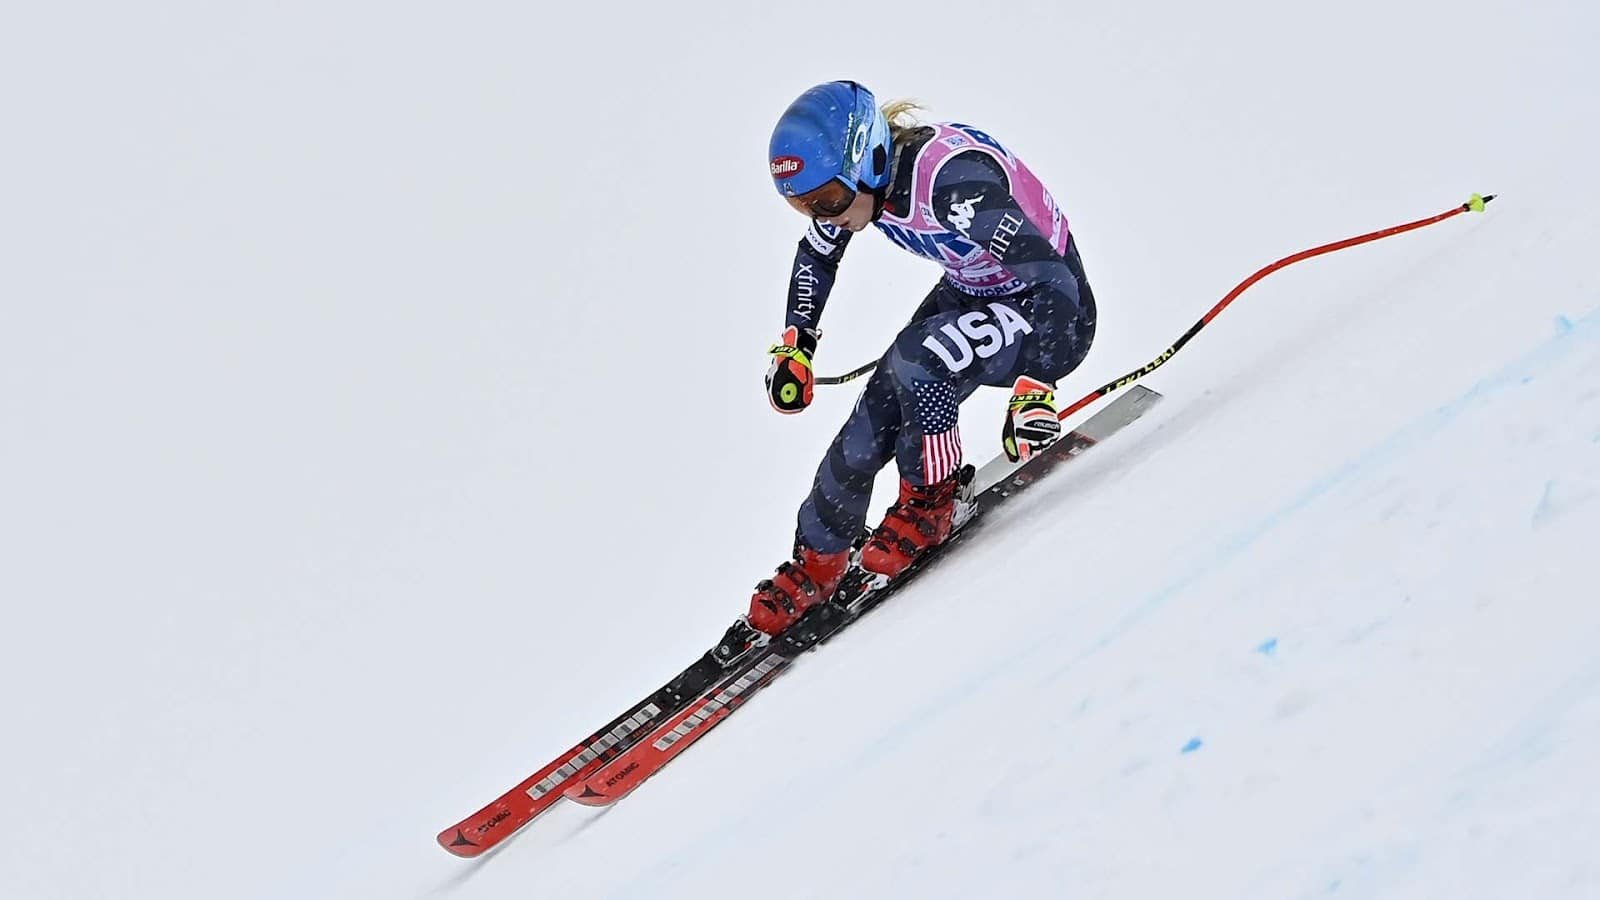 FIS Alpine Skiing Women's SL World Cup: RUN 2 – Saalbach, AUT